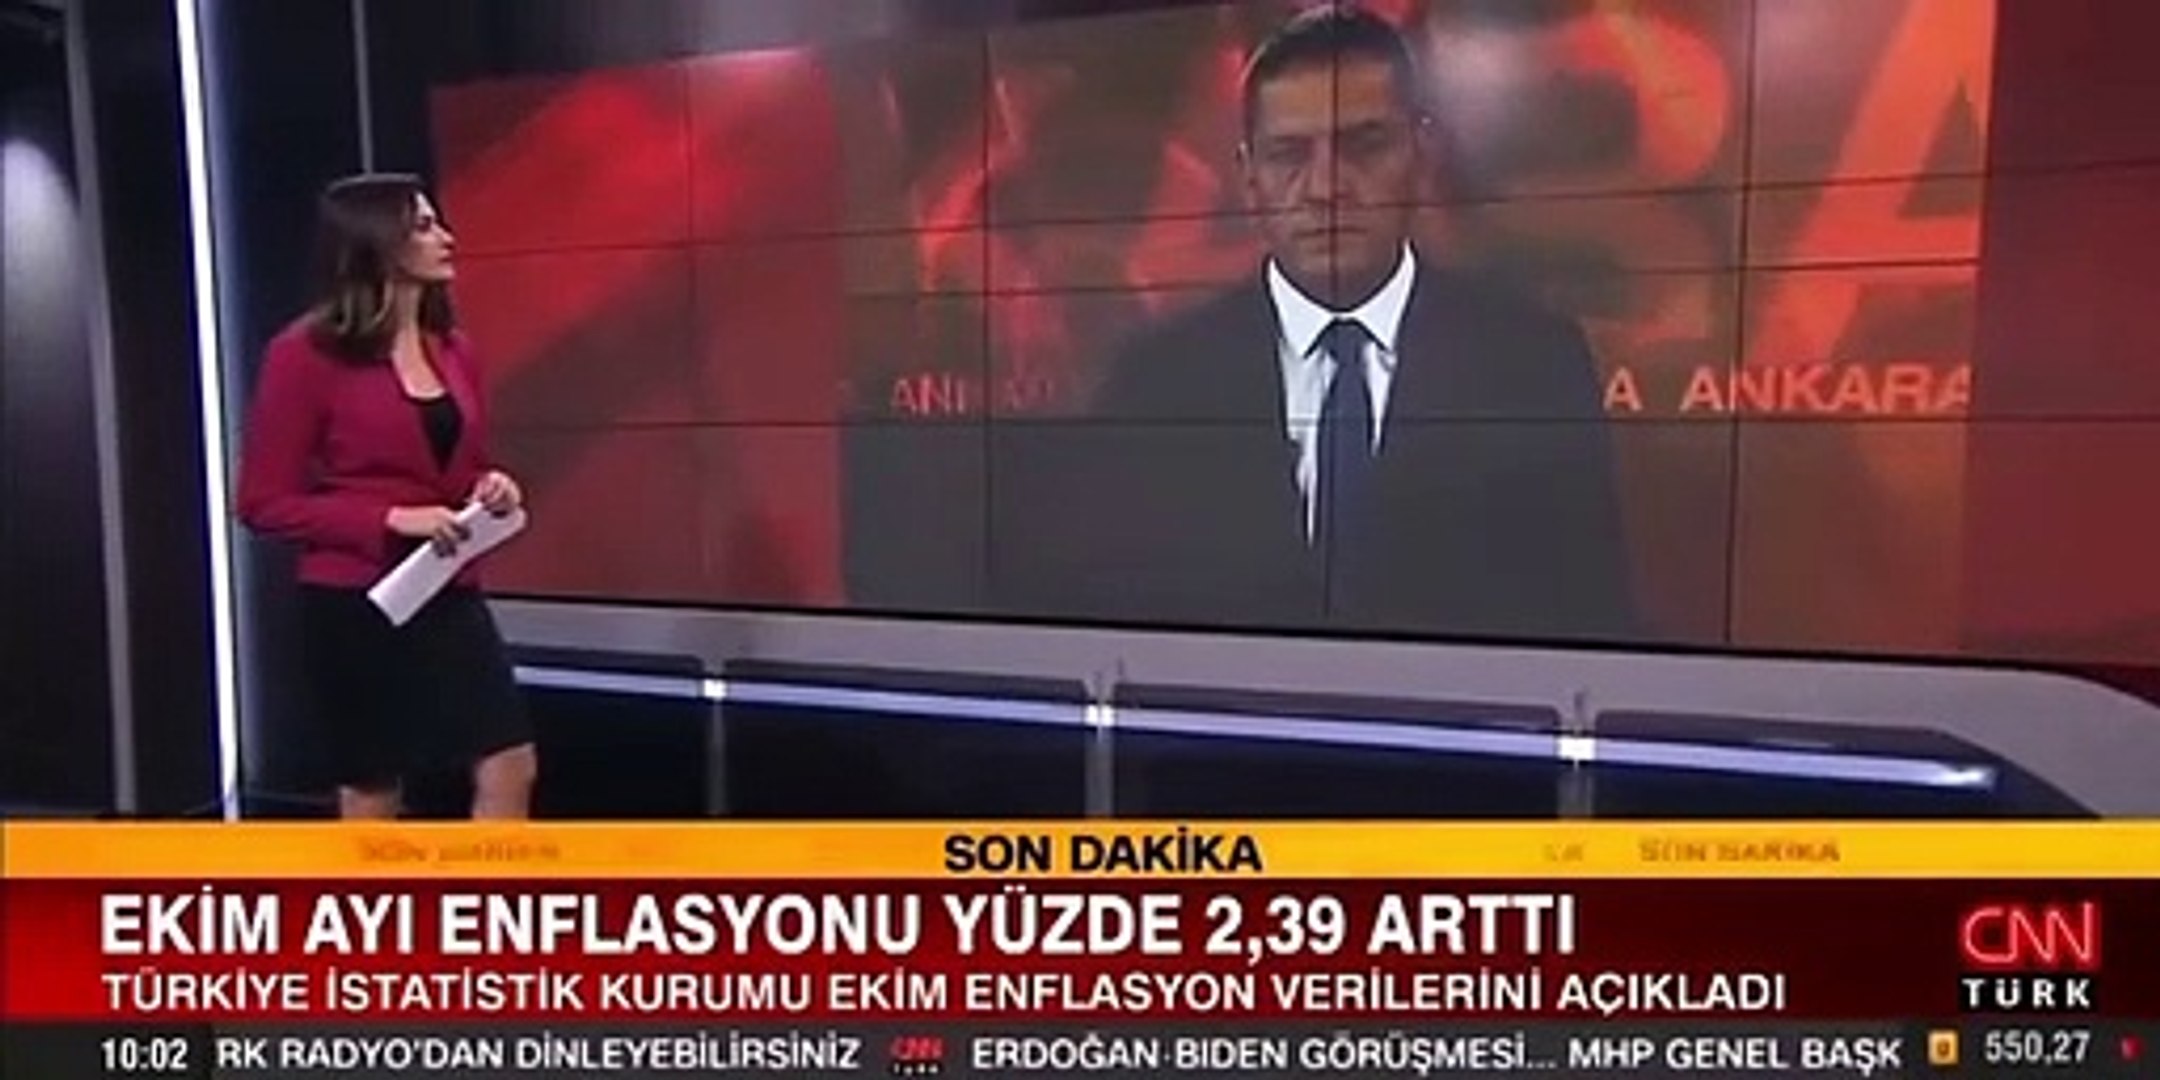 CNN Türk muhabiri, canlı yayında elindeki kağıtları yere fırlattı! -  Dailymotion Video